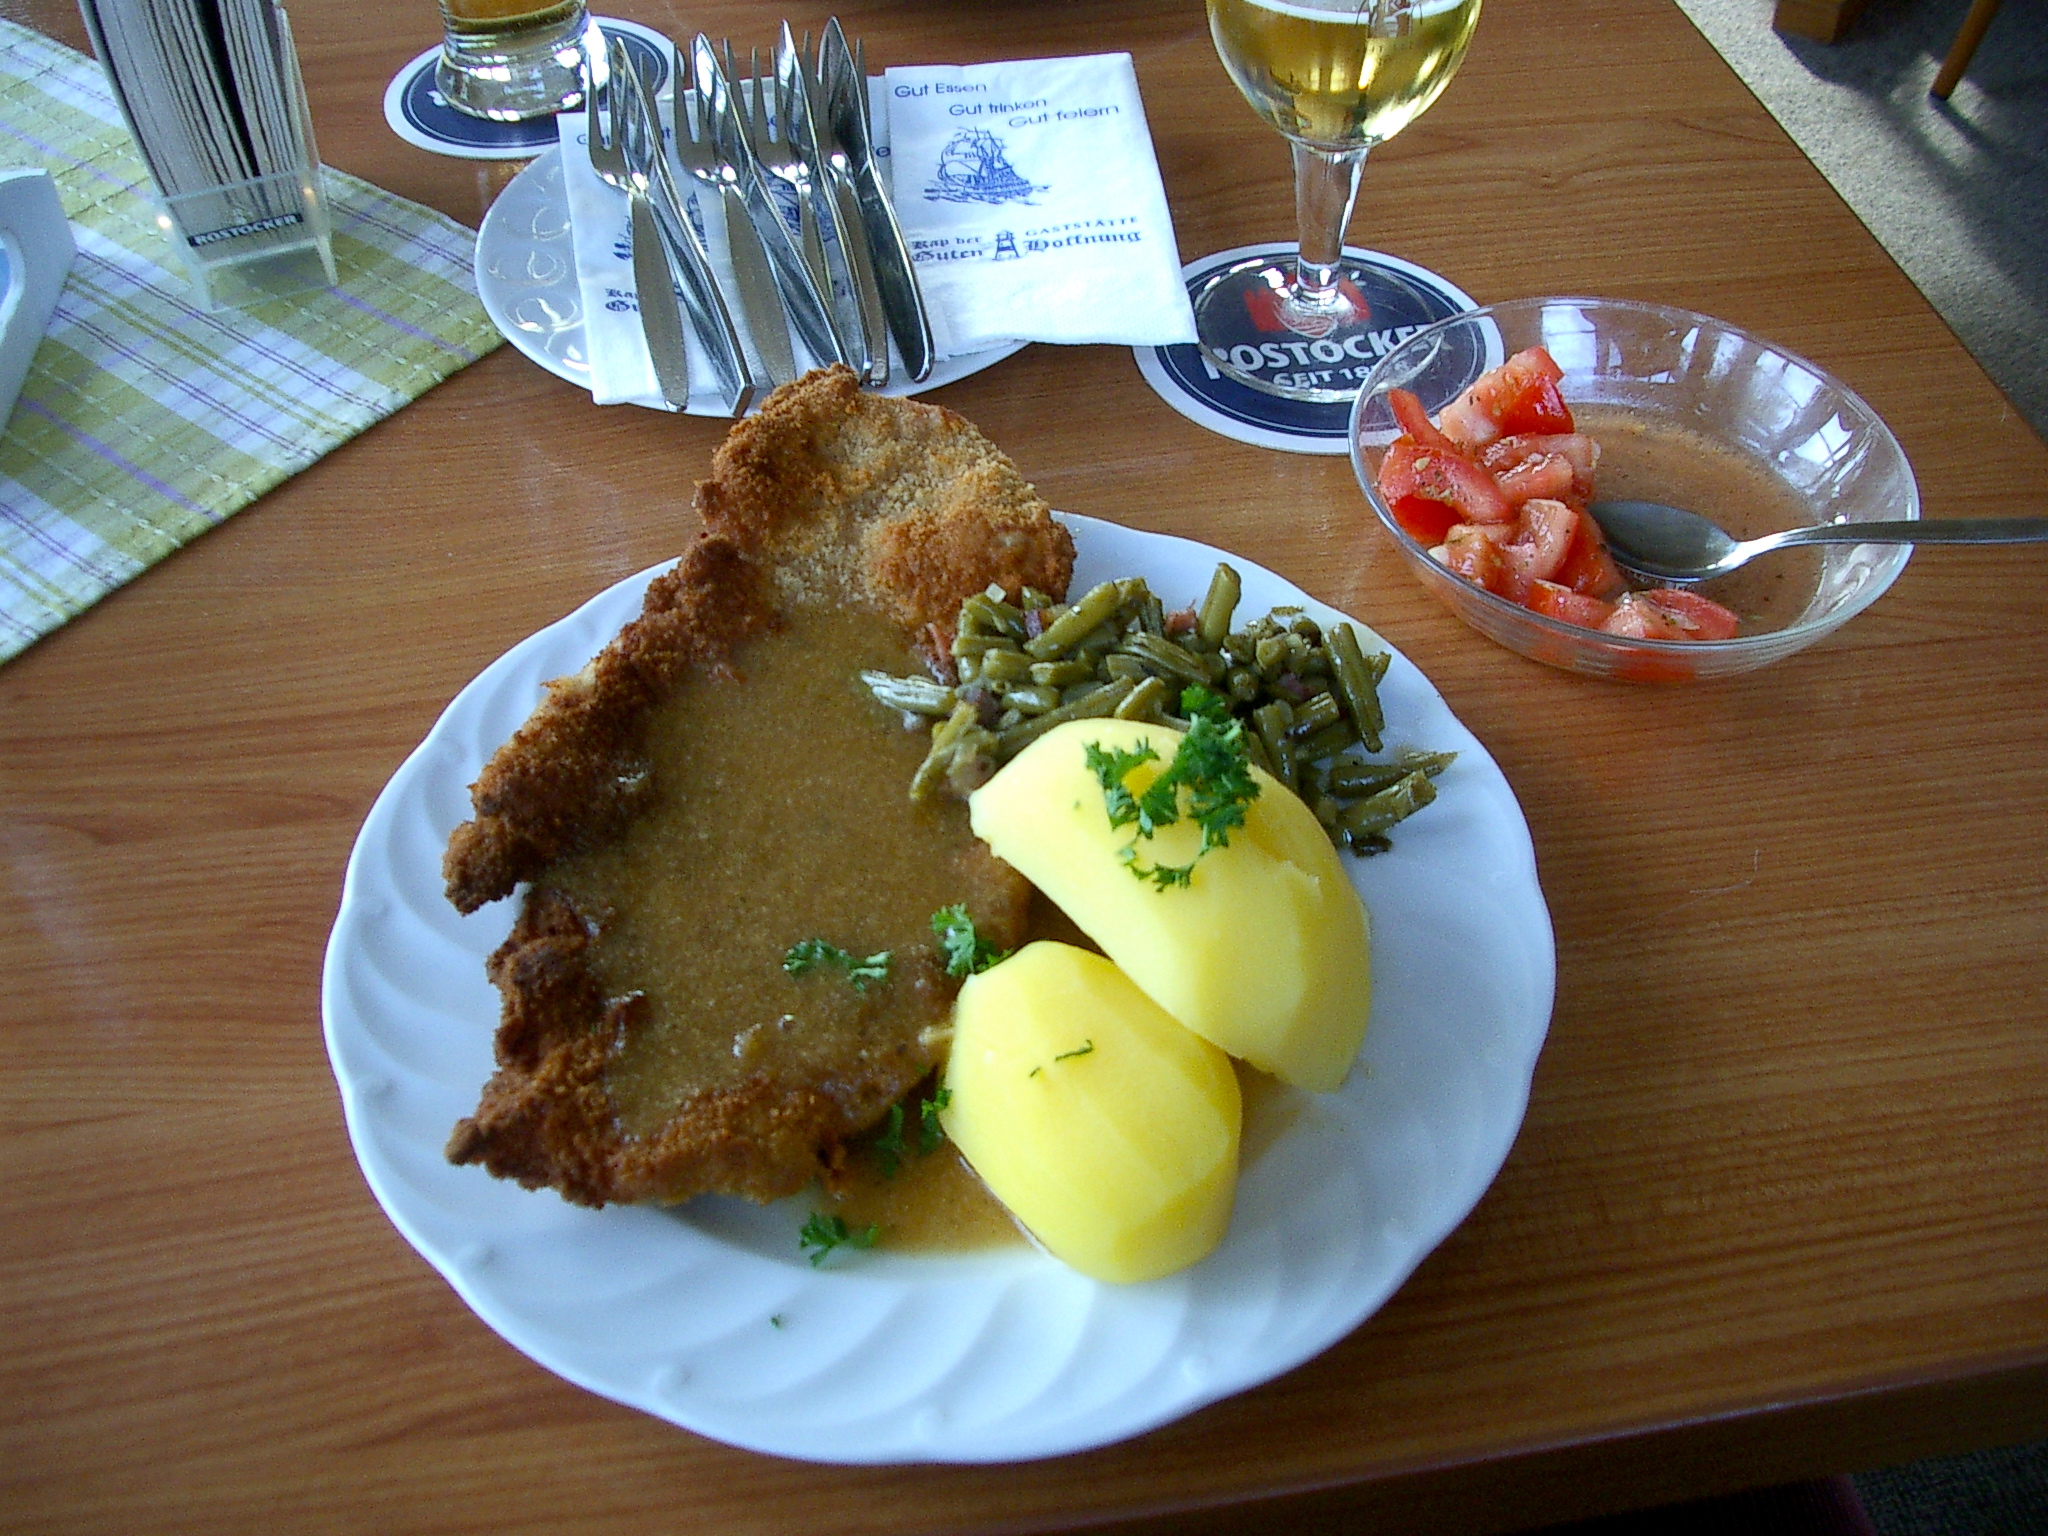 Mittagstisch am Freitag: Schnitzel und Tomatensalat für 4,50 €